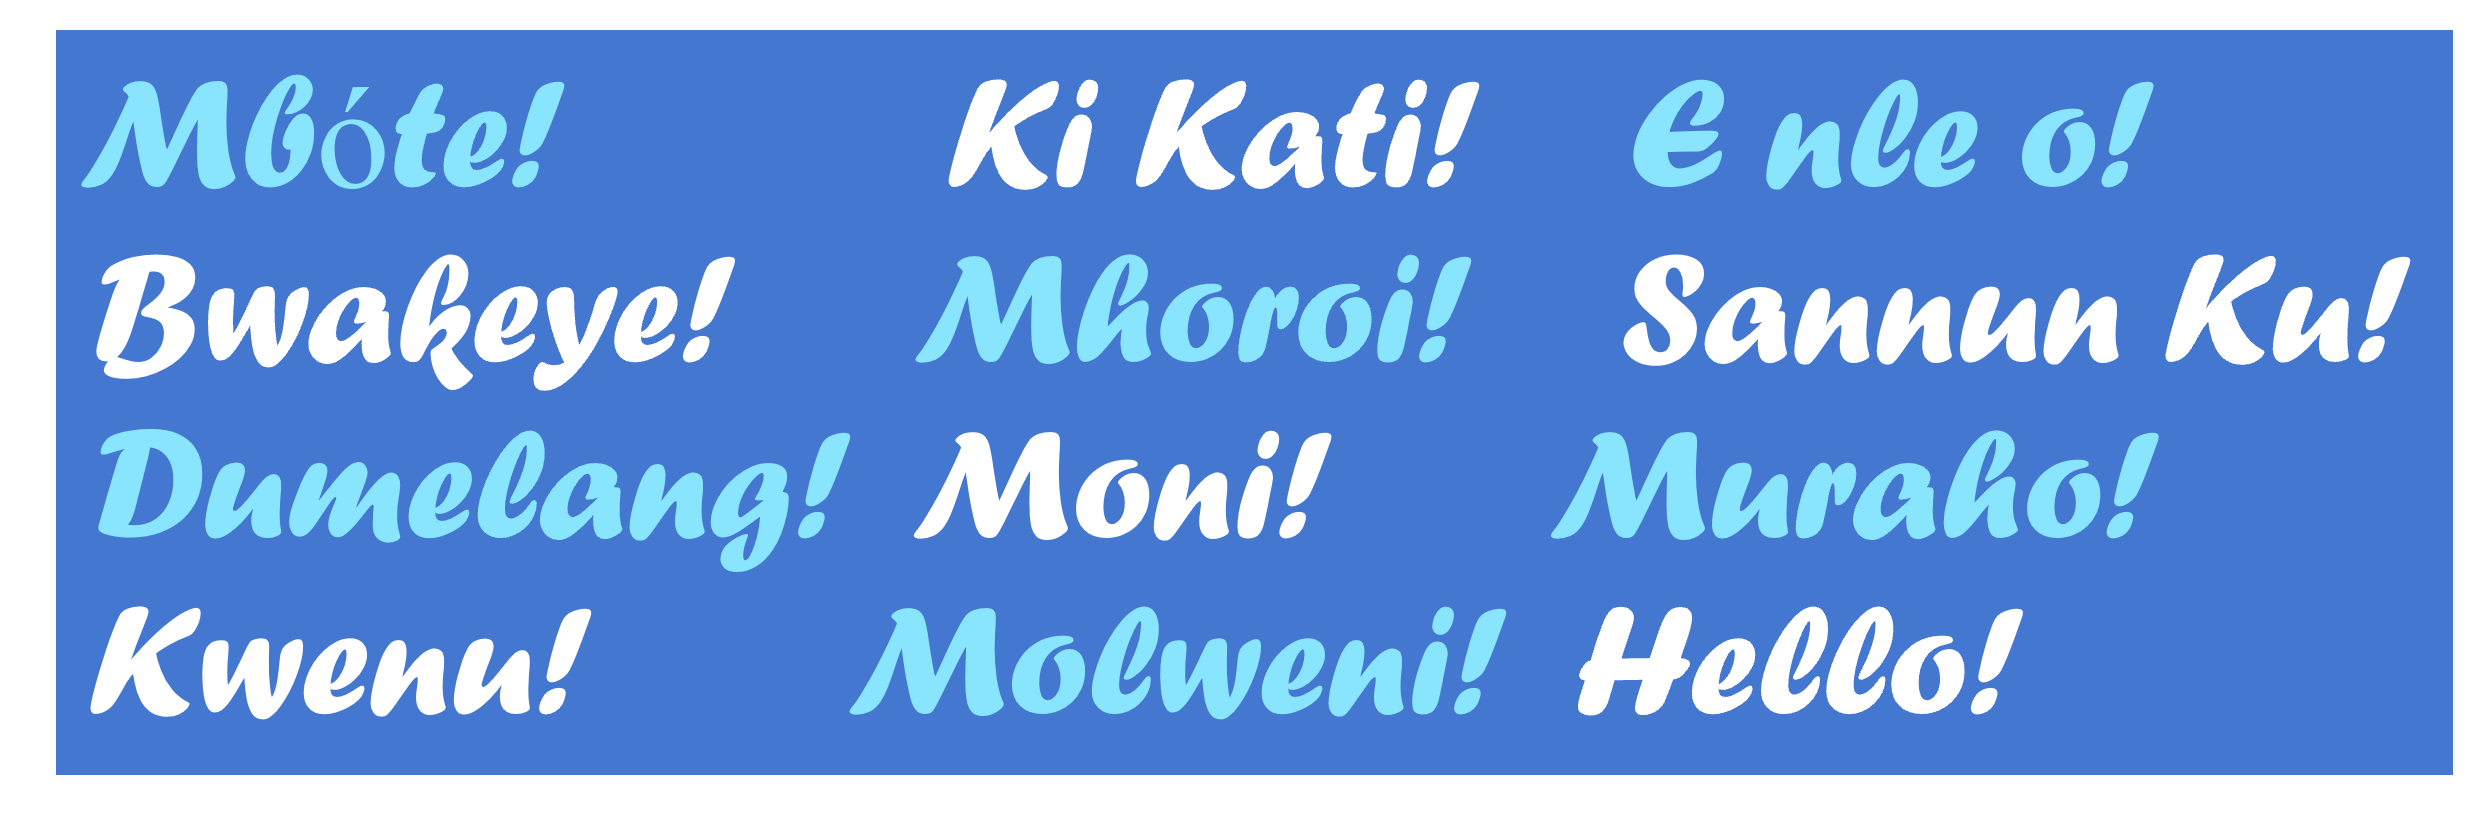 De afbeelding toont de Engelse uitdrukking "Hello" en de vertaling ervan in de set Afrikaanse talen die in deze blogpost wordt beschreven.